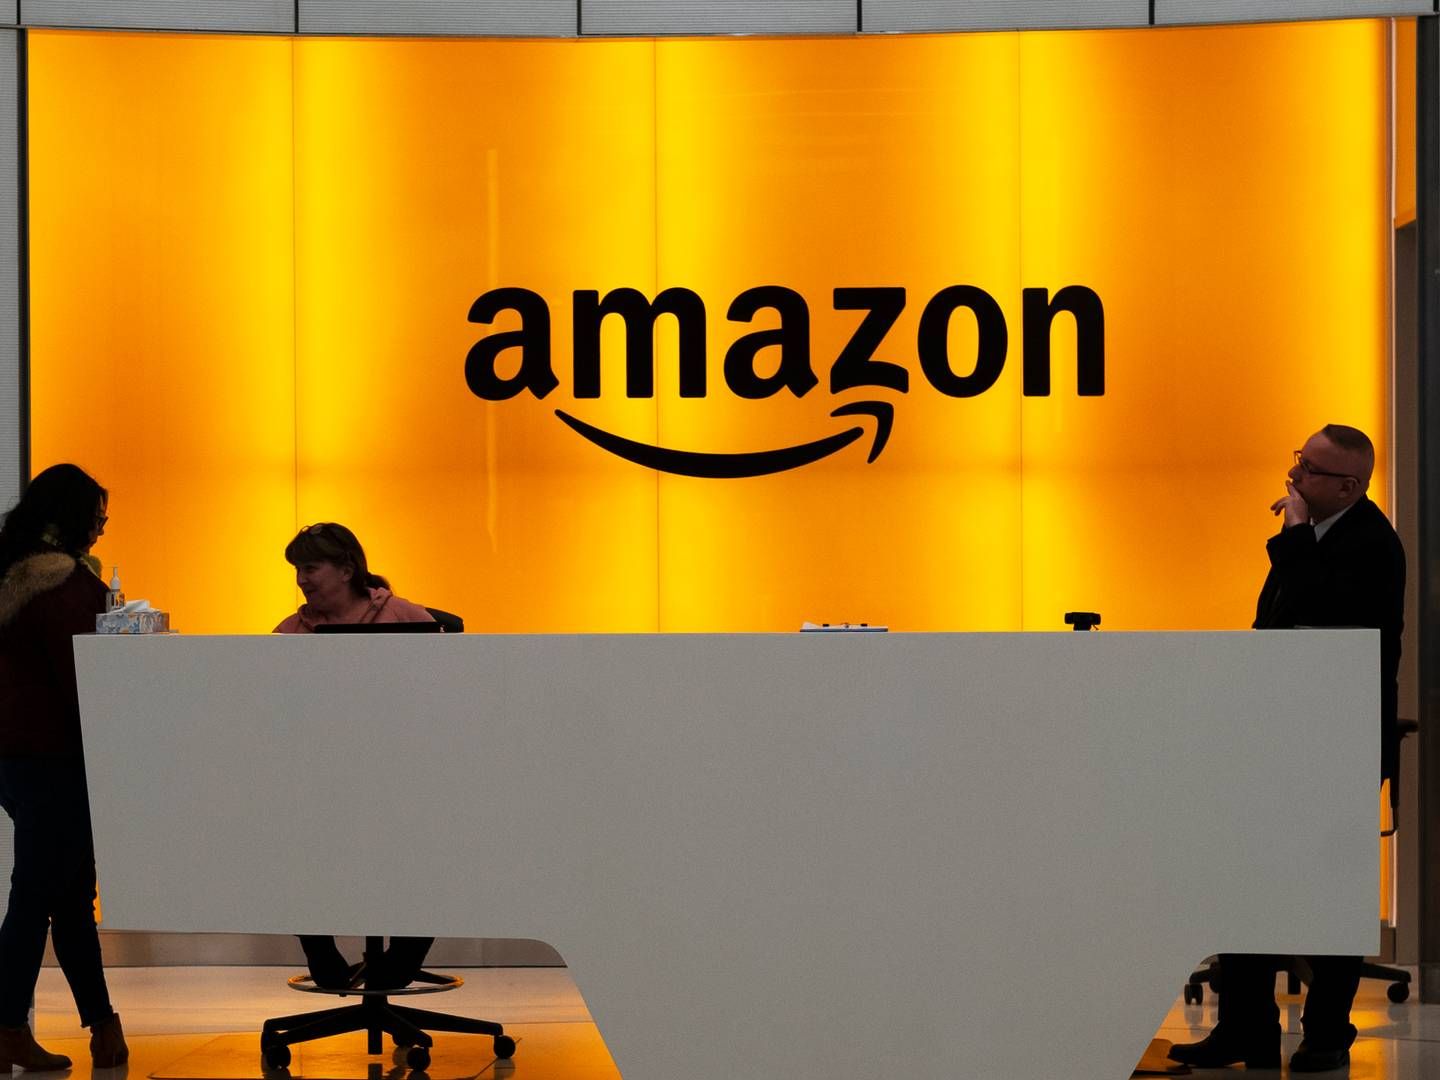 Amazon udvidede til Sverige i efteråret 2020, men har ikke annonceret planer om en lignende dansk udgave.